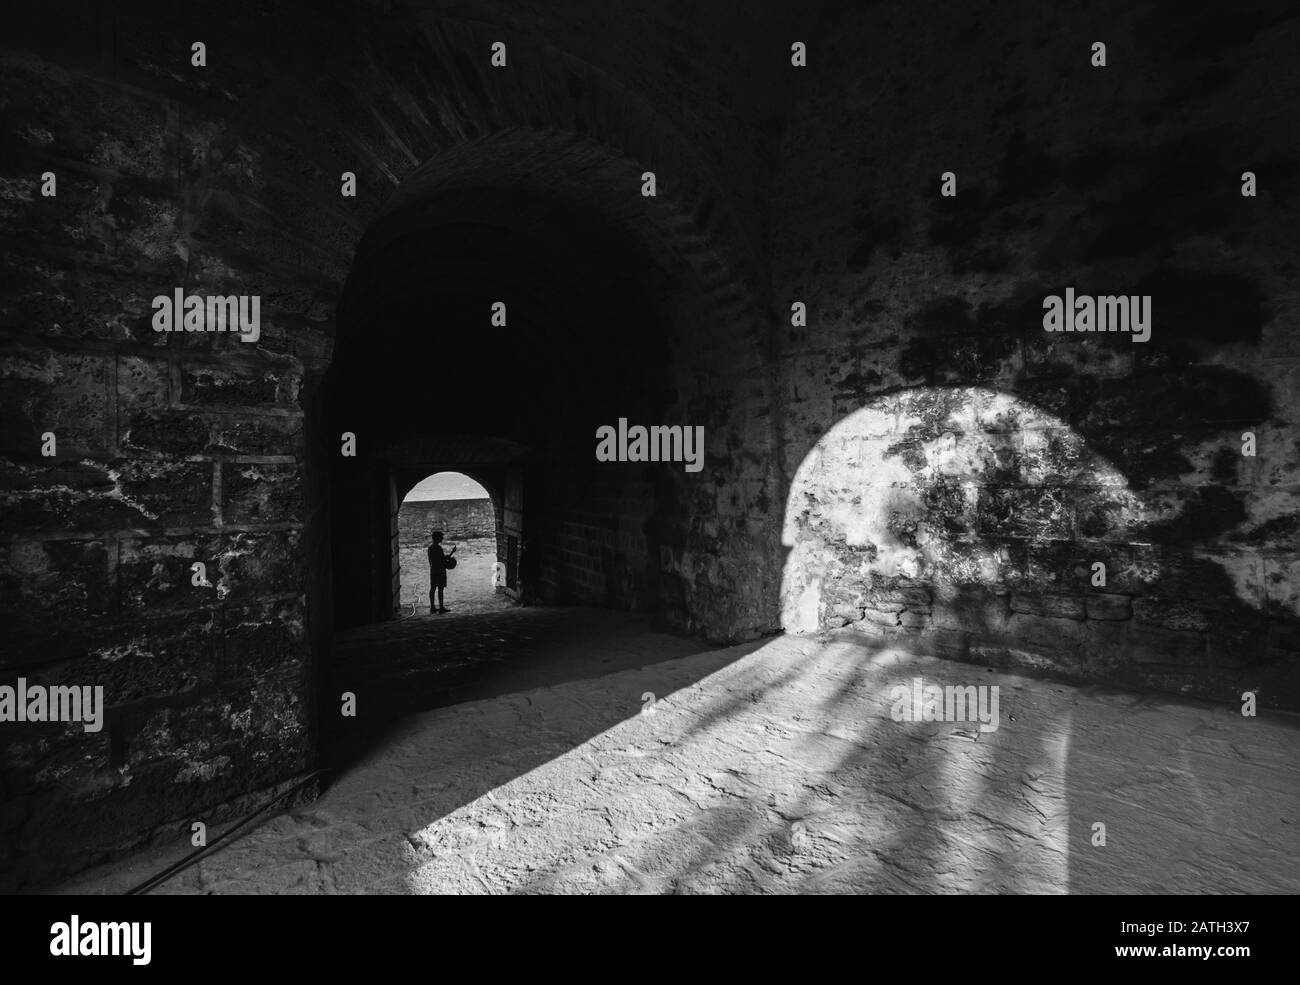 DIU, Inde - décembre 2018 : une image en niveaux de gris de la lumière qui tombe sur les murs à travers les arches géométriques de l'ancien fort De Diu construit en portugais Banque D'Images